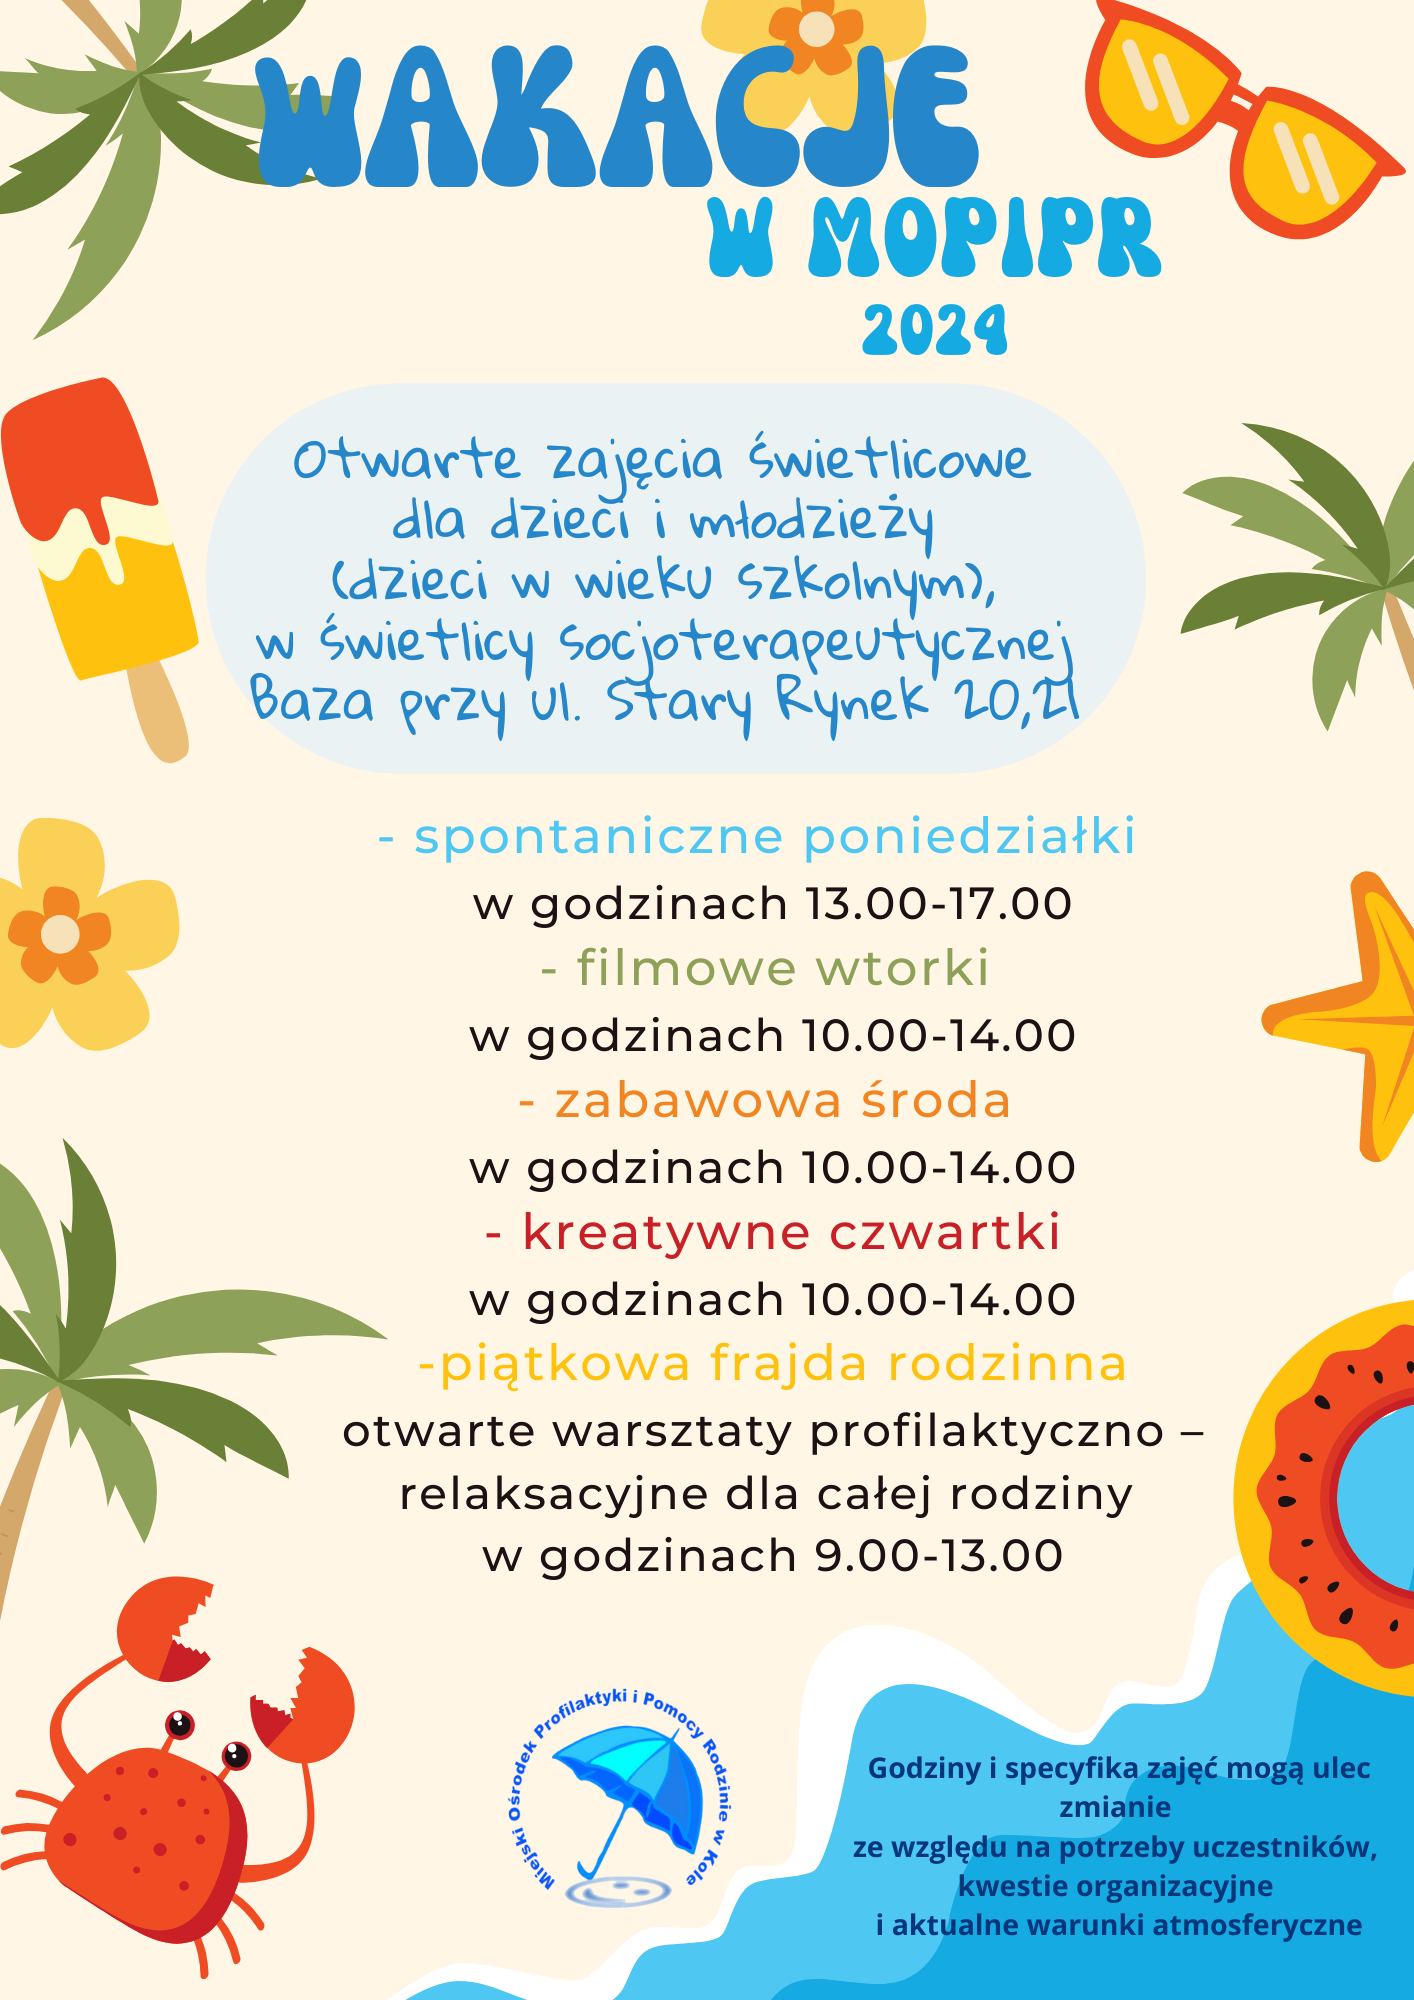 Plakat z programem zajęć wakacyjnych dla dzieci oraz rodzin w świetlicach MOPiPR w Kole